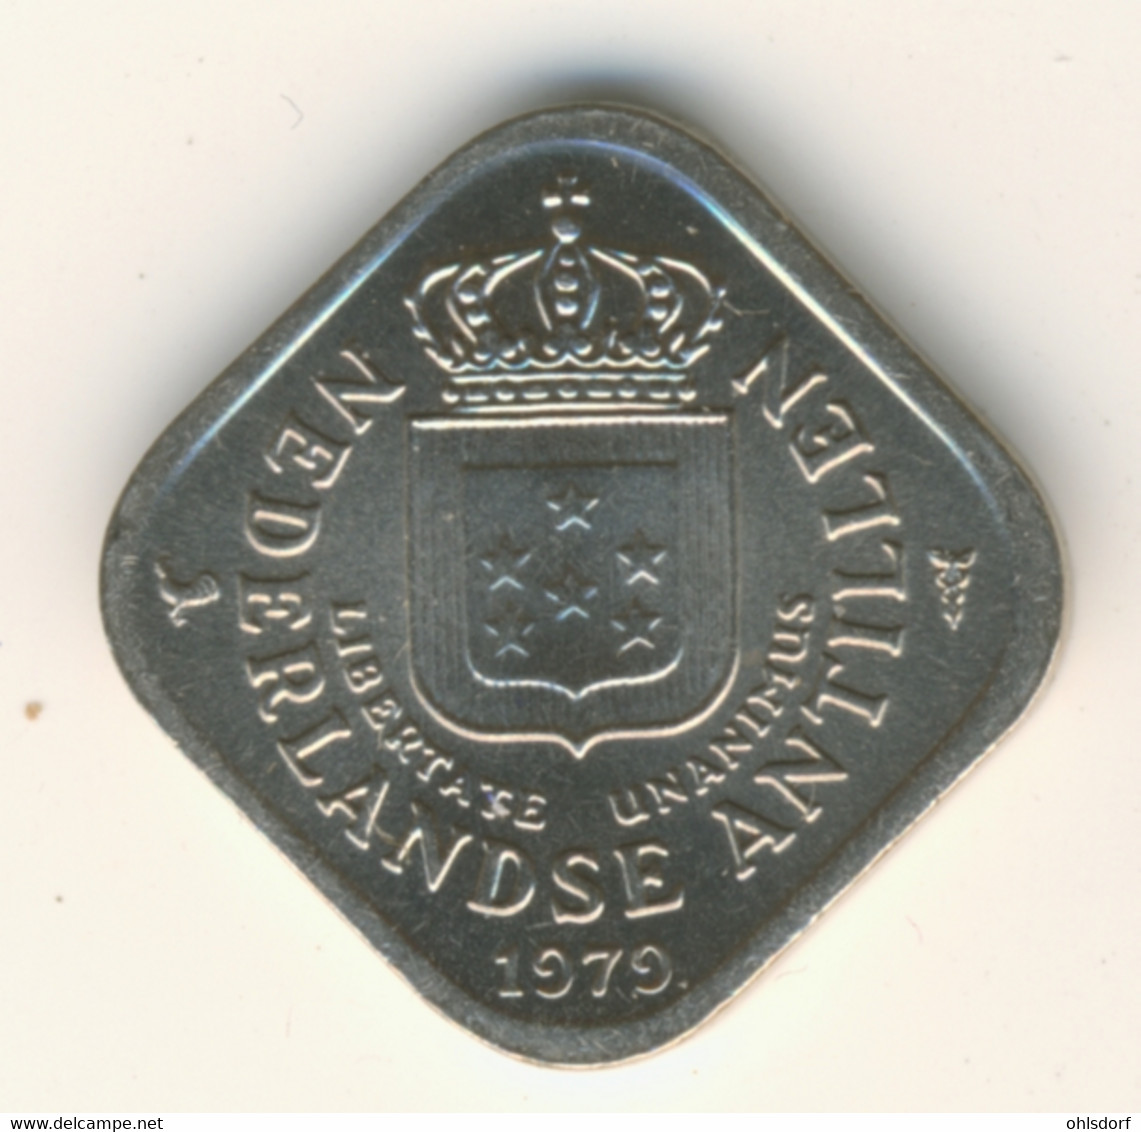 NETHERLAND ANTILLAS 1979: 5 Cent, KM 13 - Niederländische Antillen